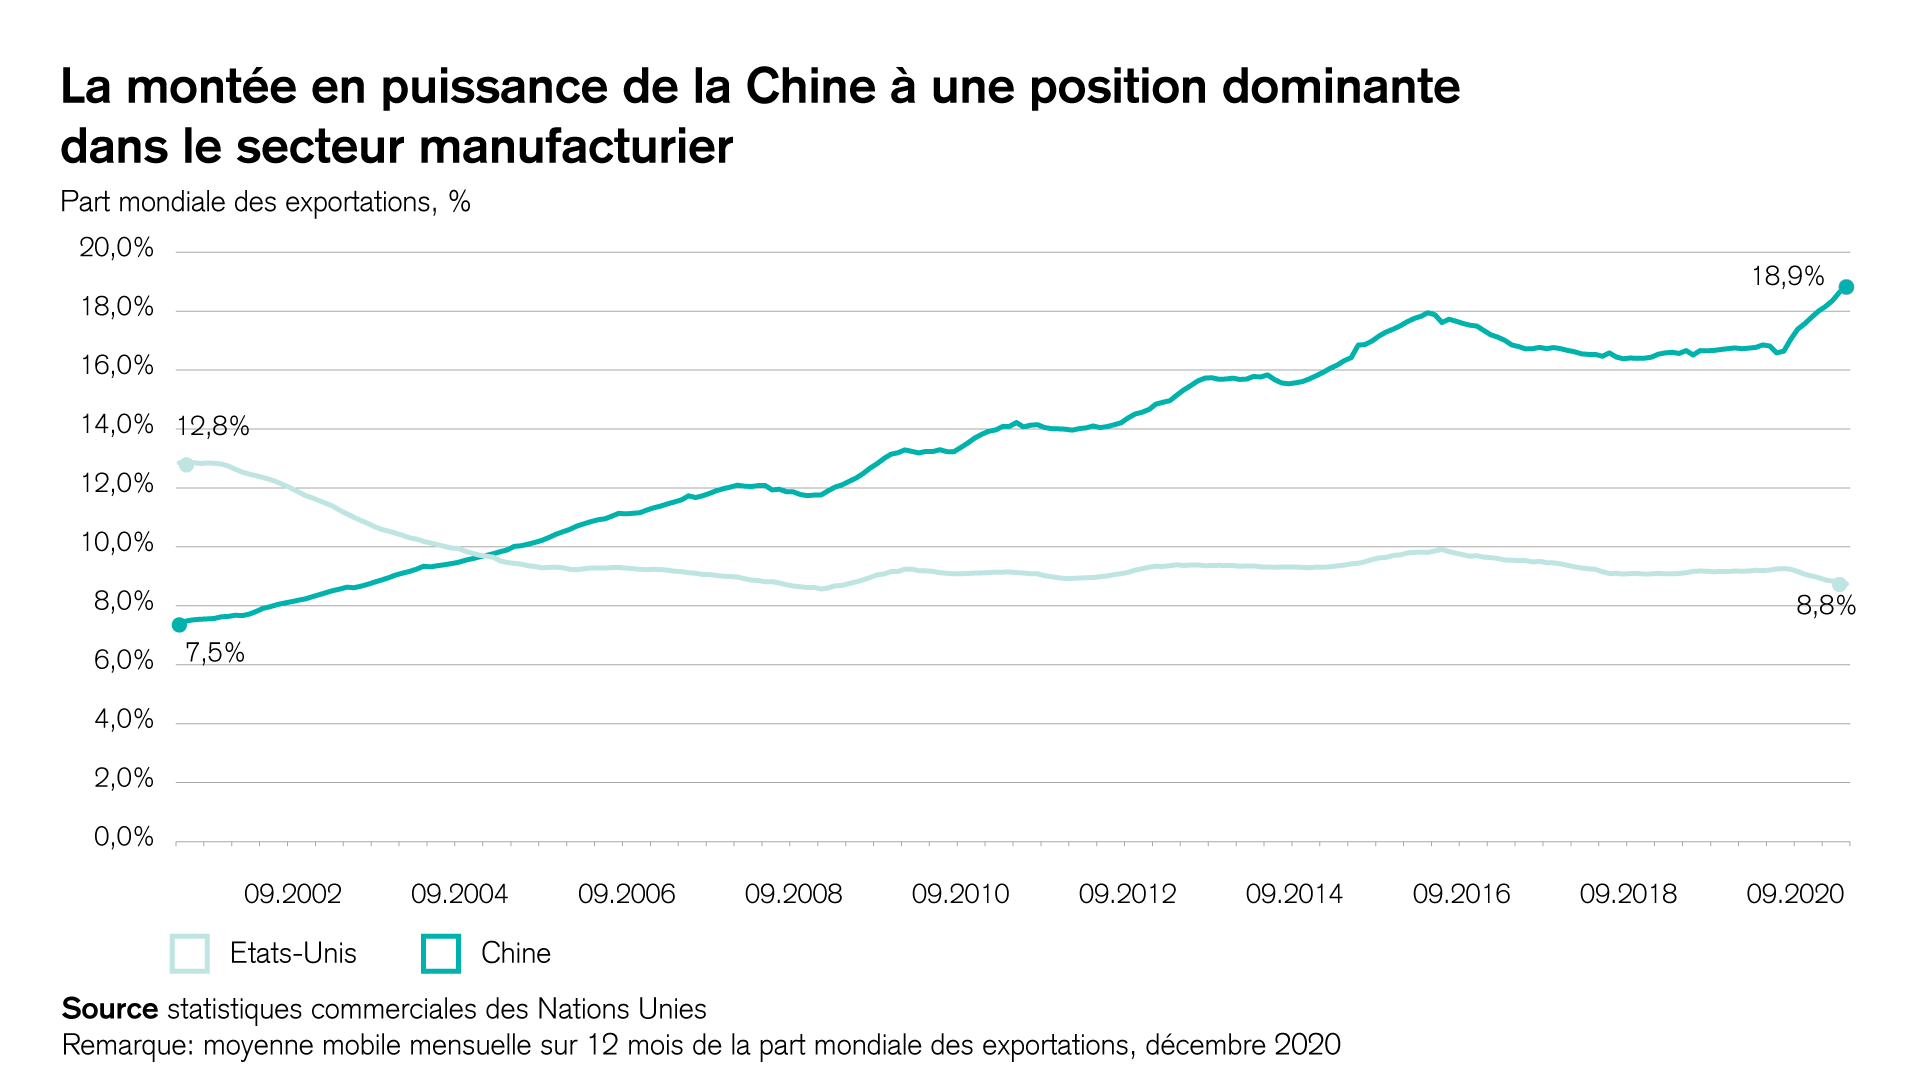 La montée en puissance de la Chine à une position dominante dans le secteur manufacturier